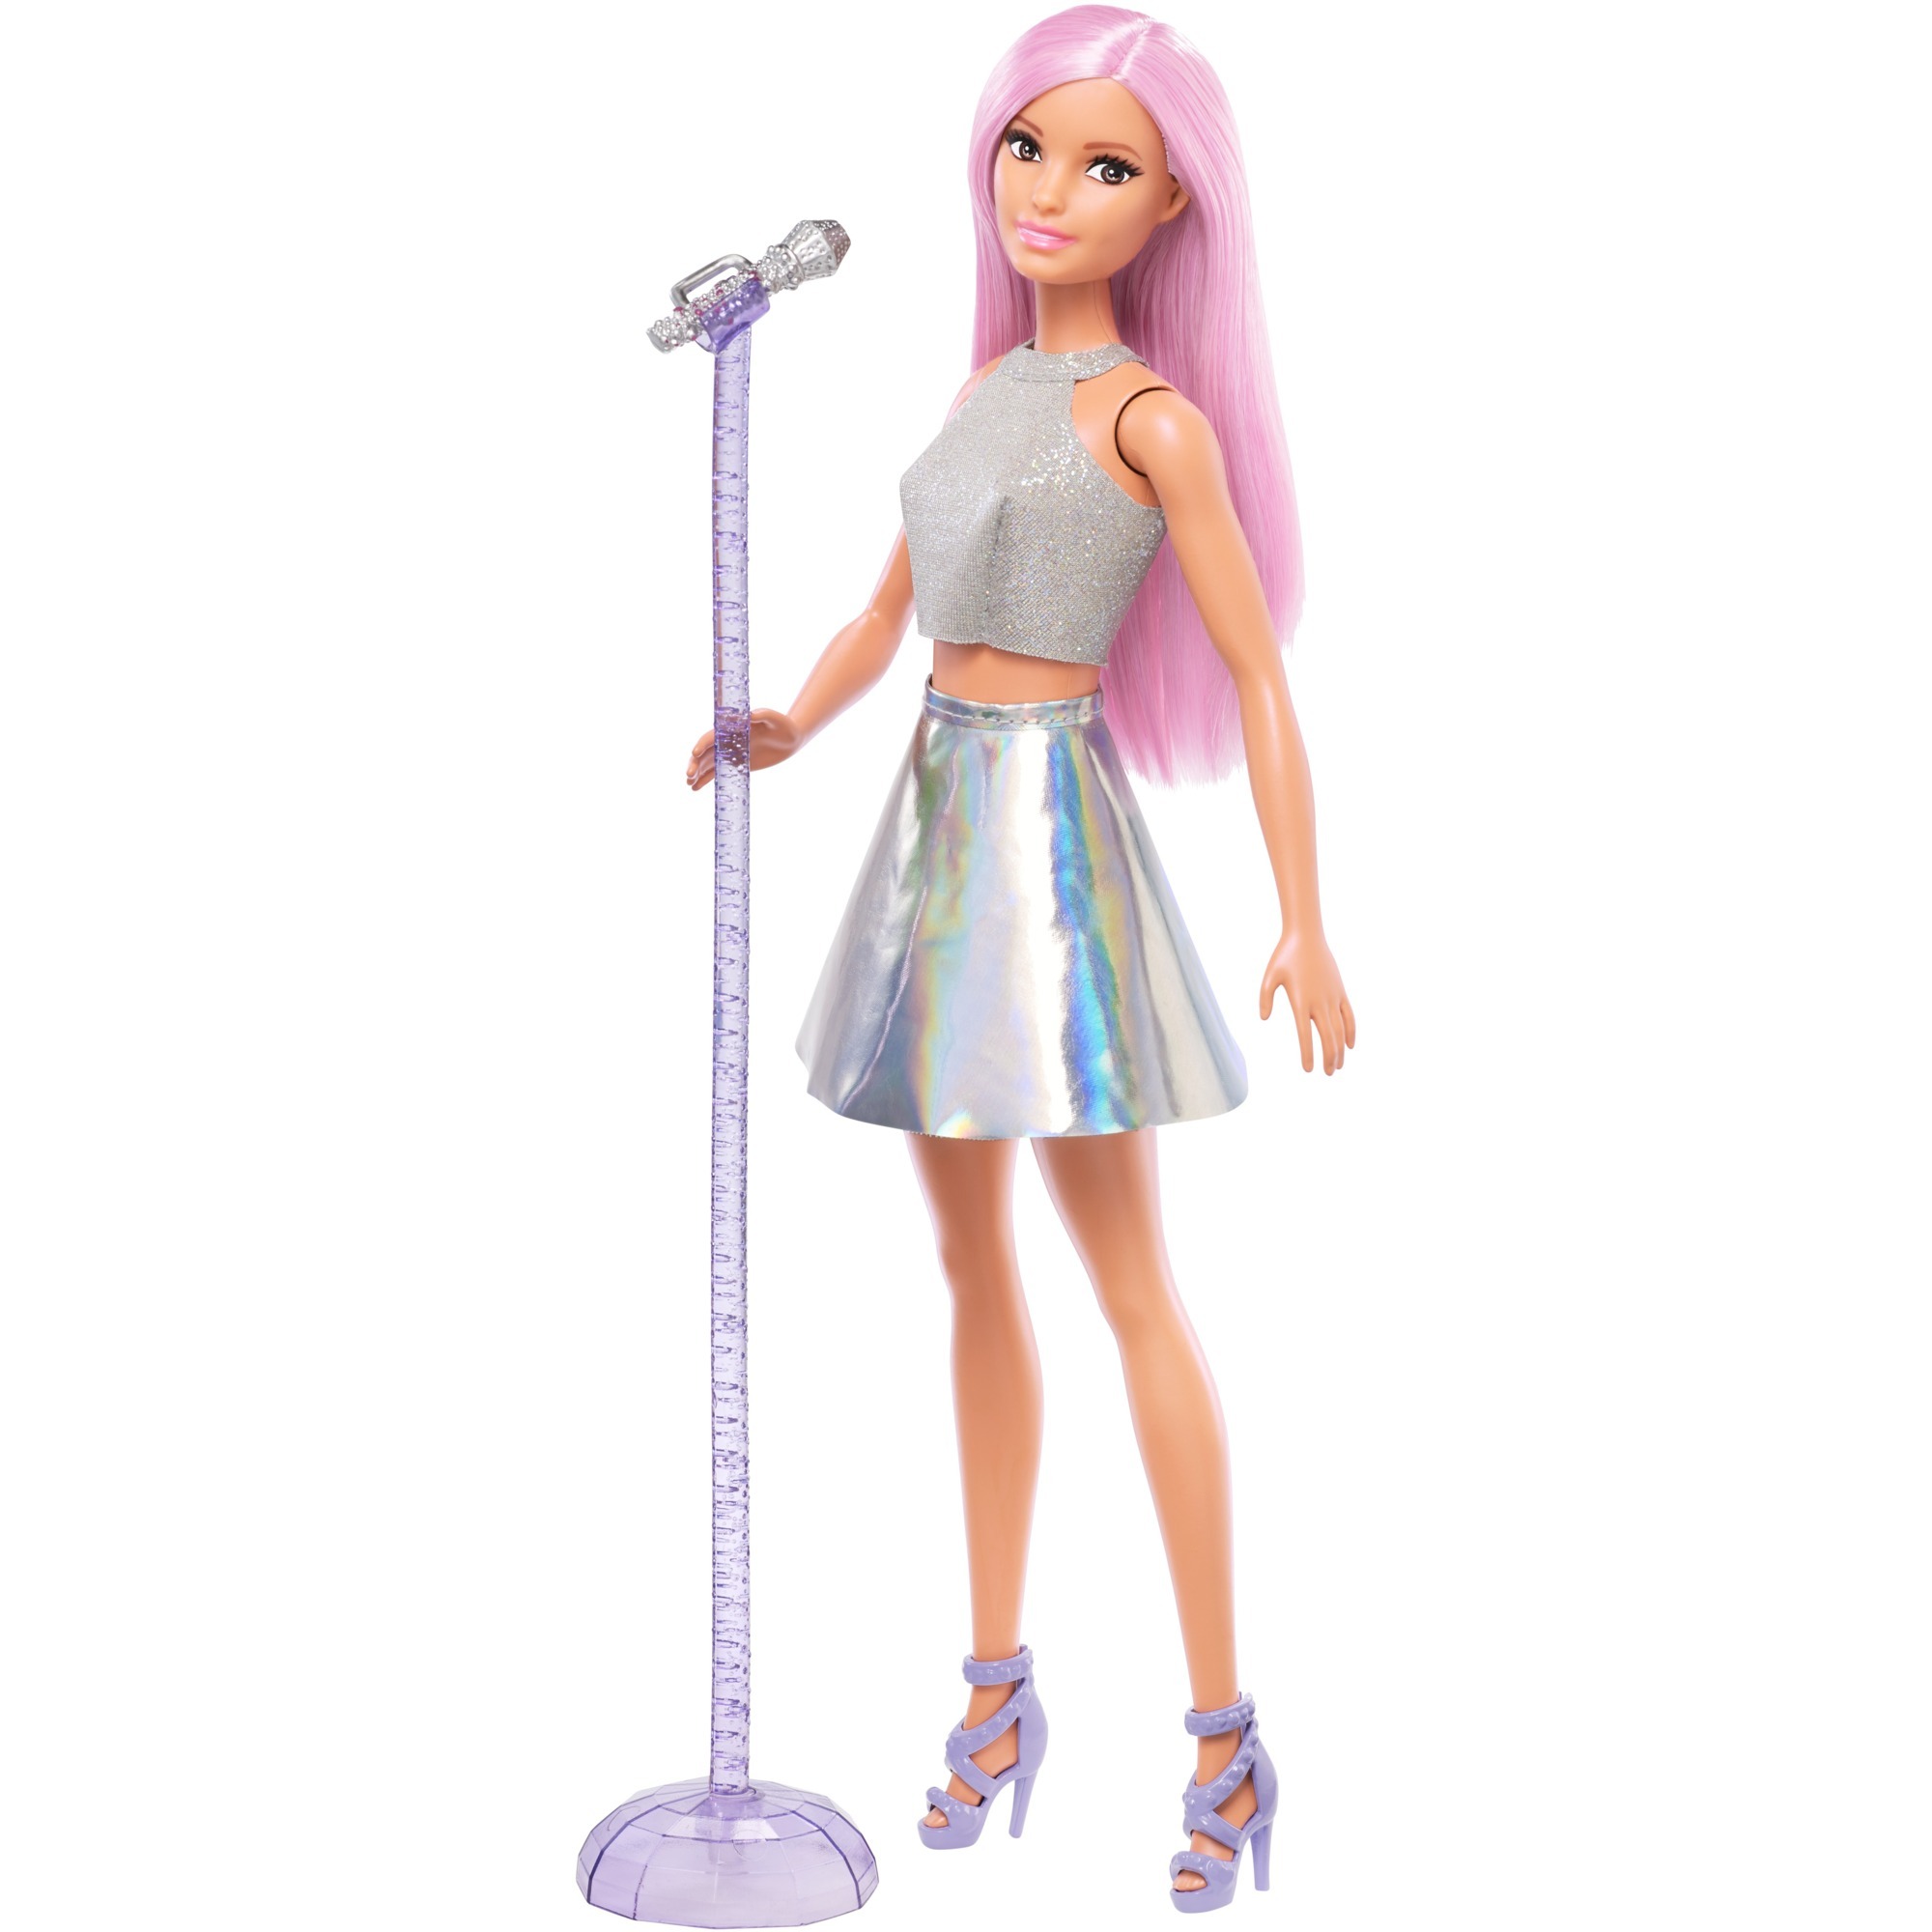 Image of Alternate - Barbie Sängerin, Puppe online einkaufen bei Alternate